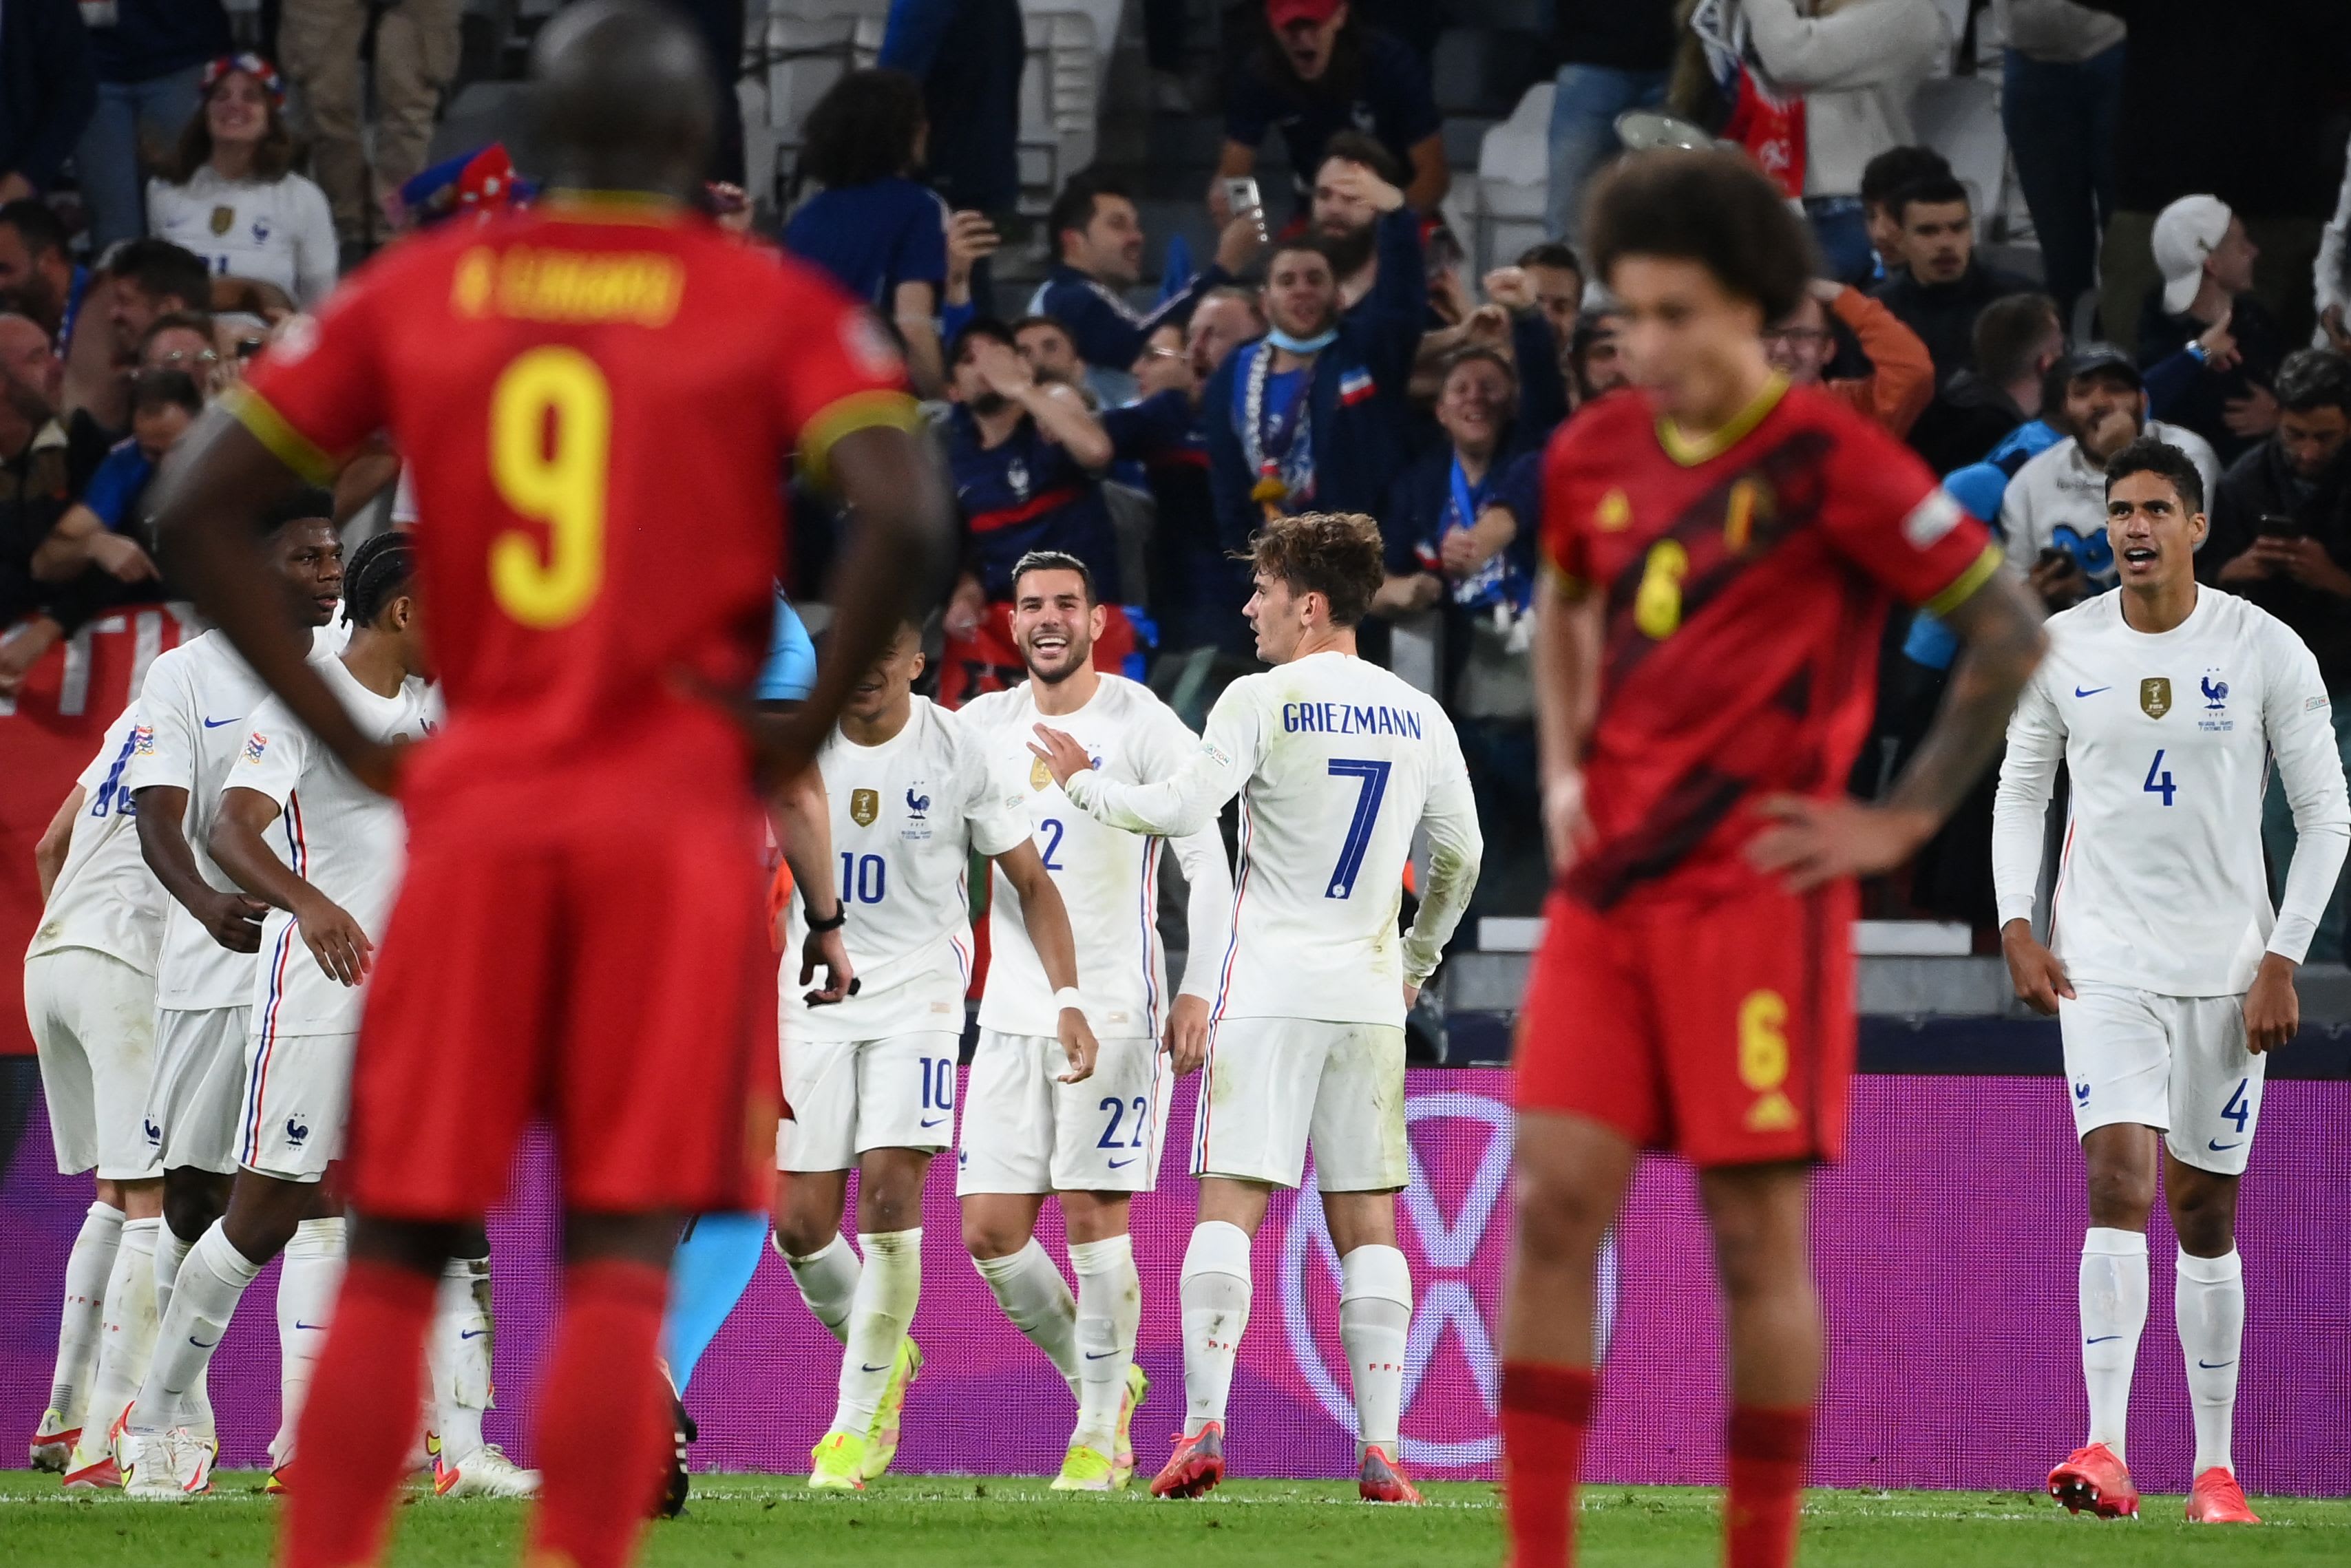 תאו הרננדז ושחקני נבחרת צרפת חוגגים נגד בלגיה